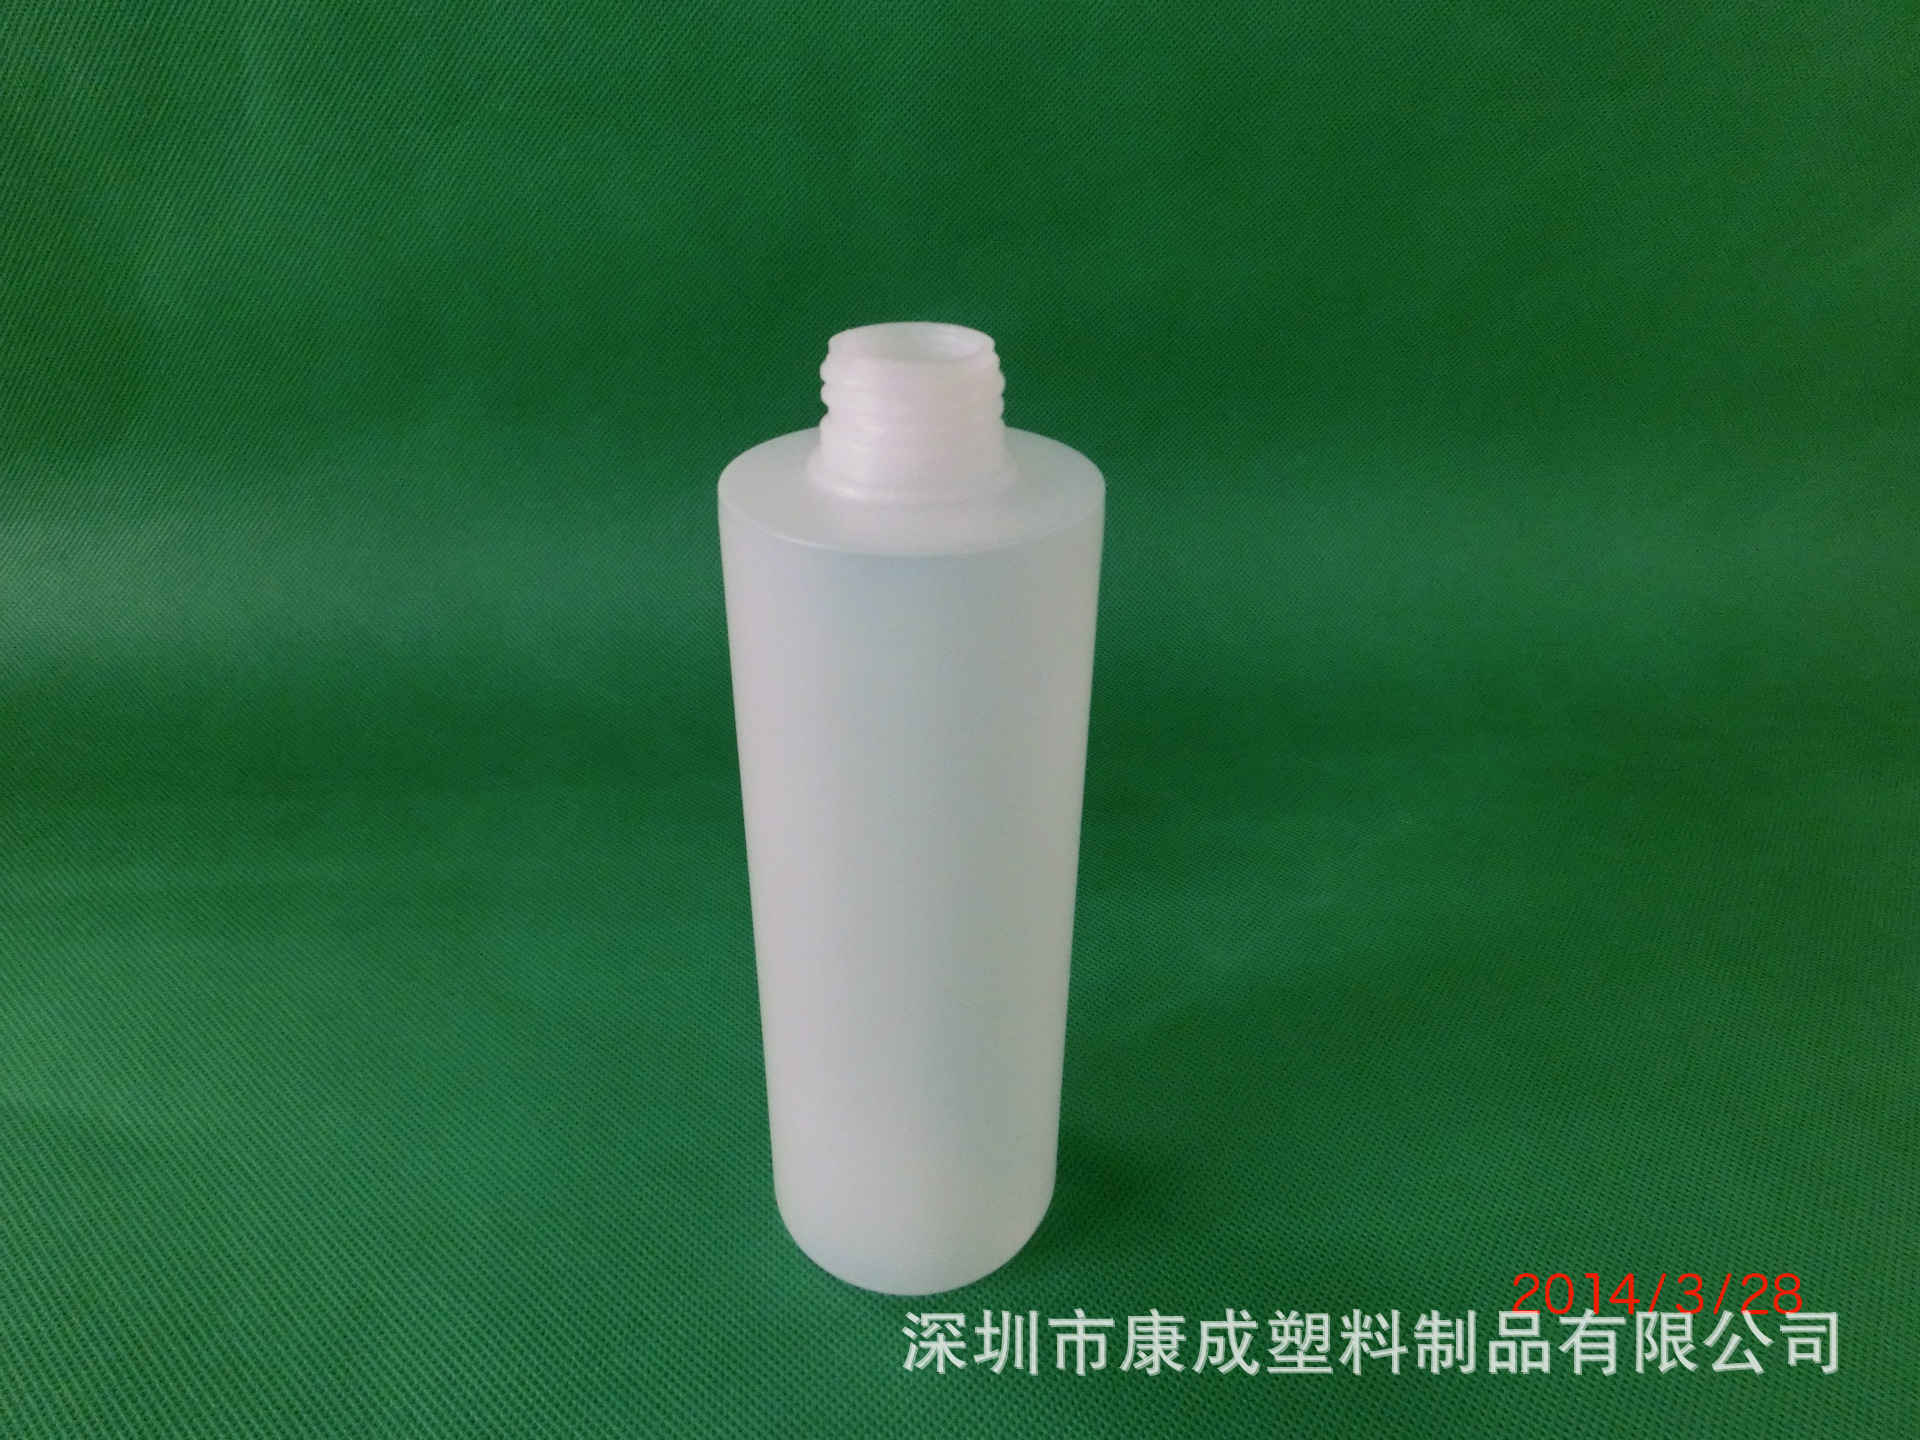 pe塑料瓶 250ml塑料瓶 化妆品塑料瓶 厂家直销塑料瓶